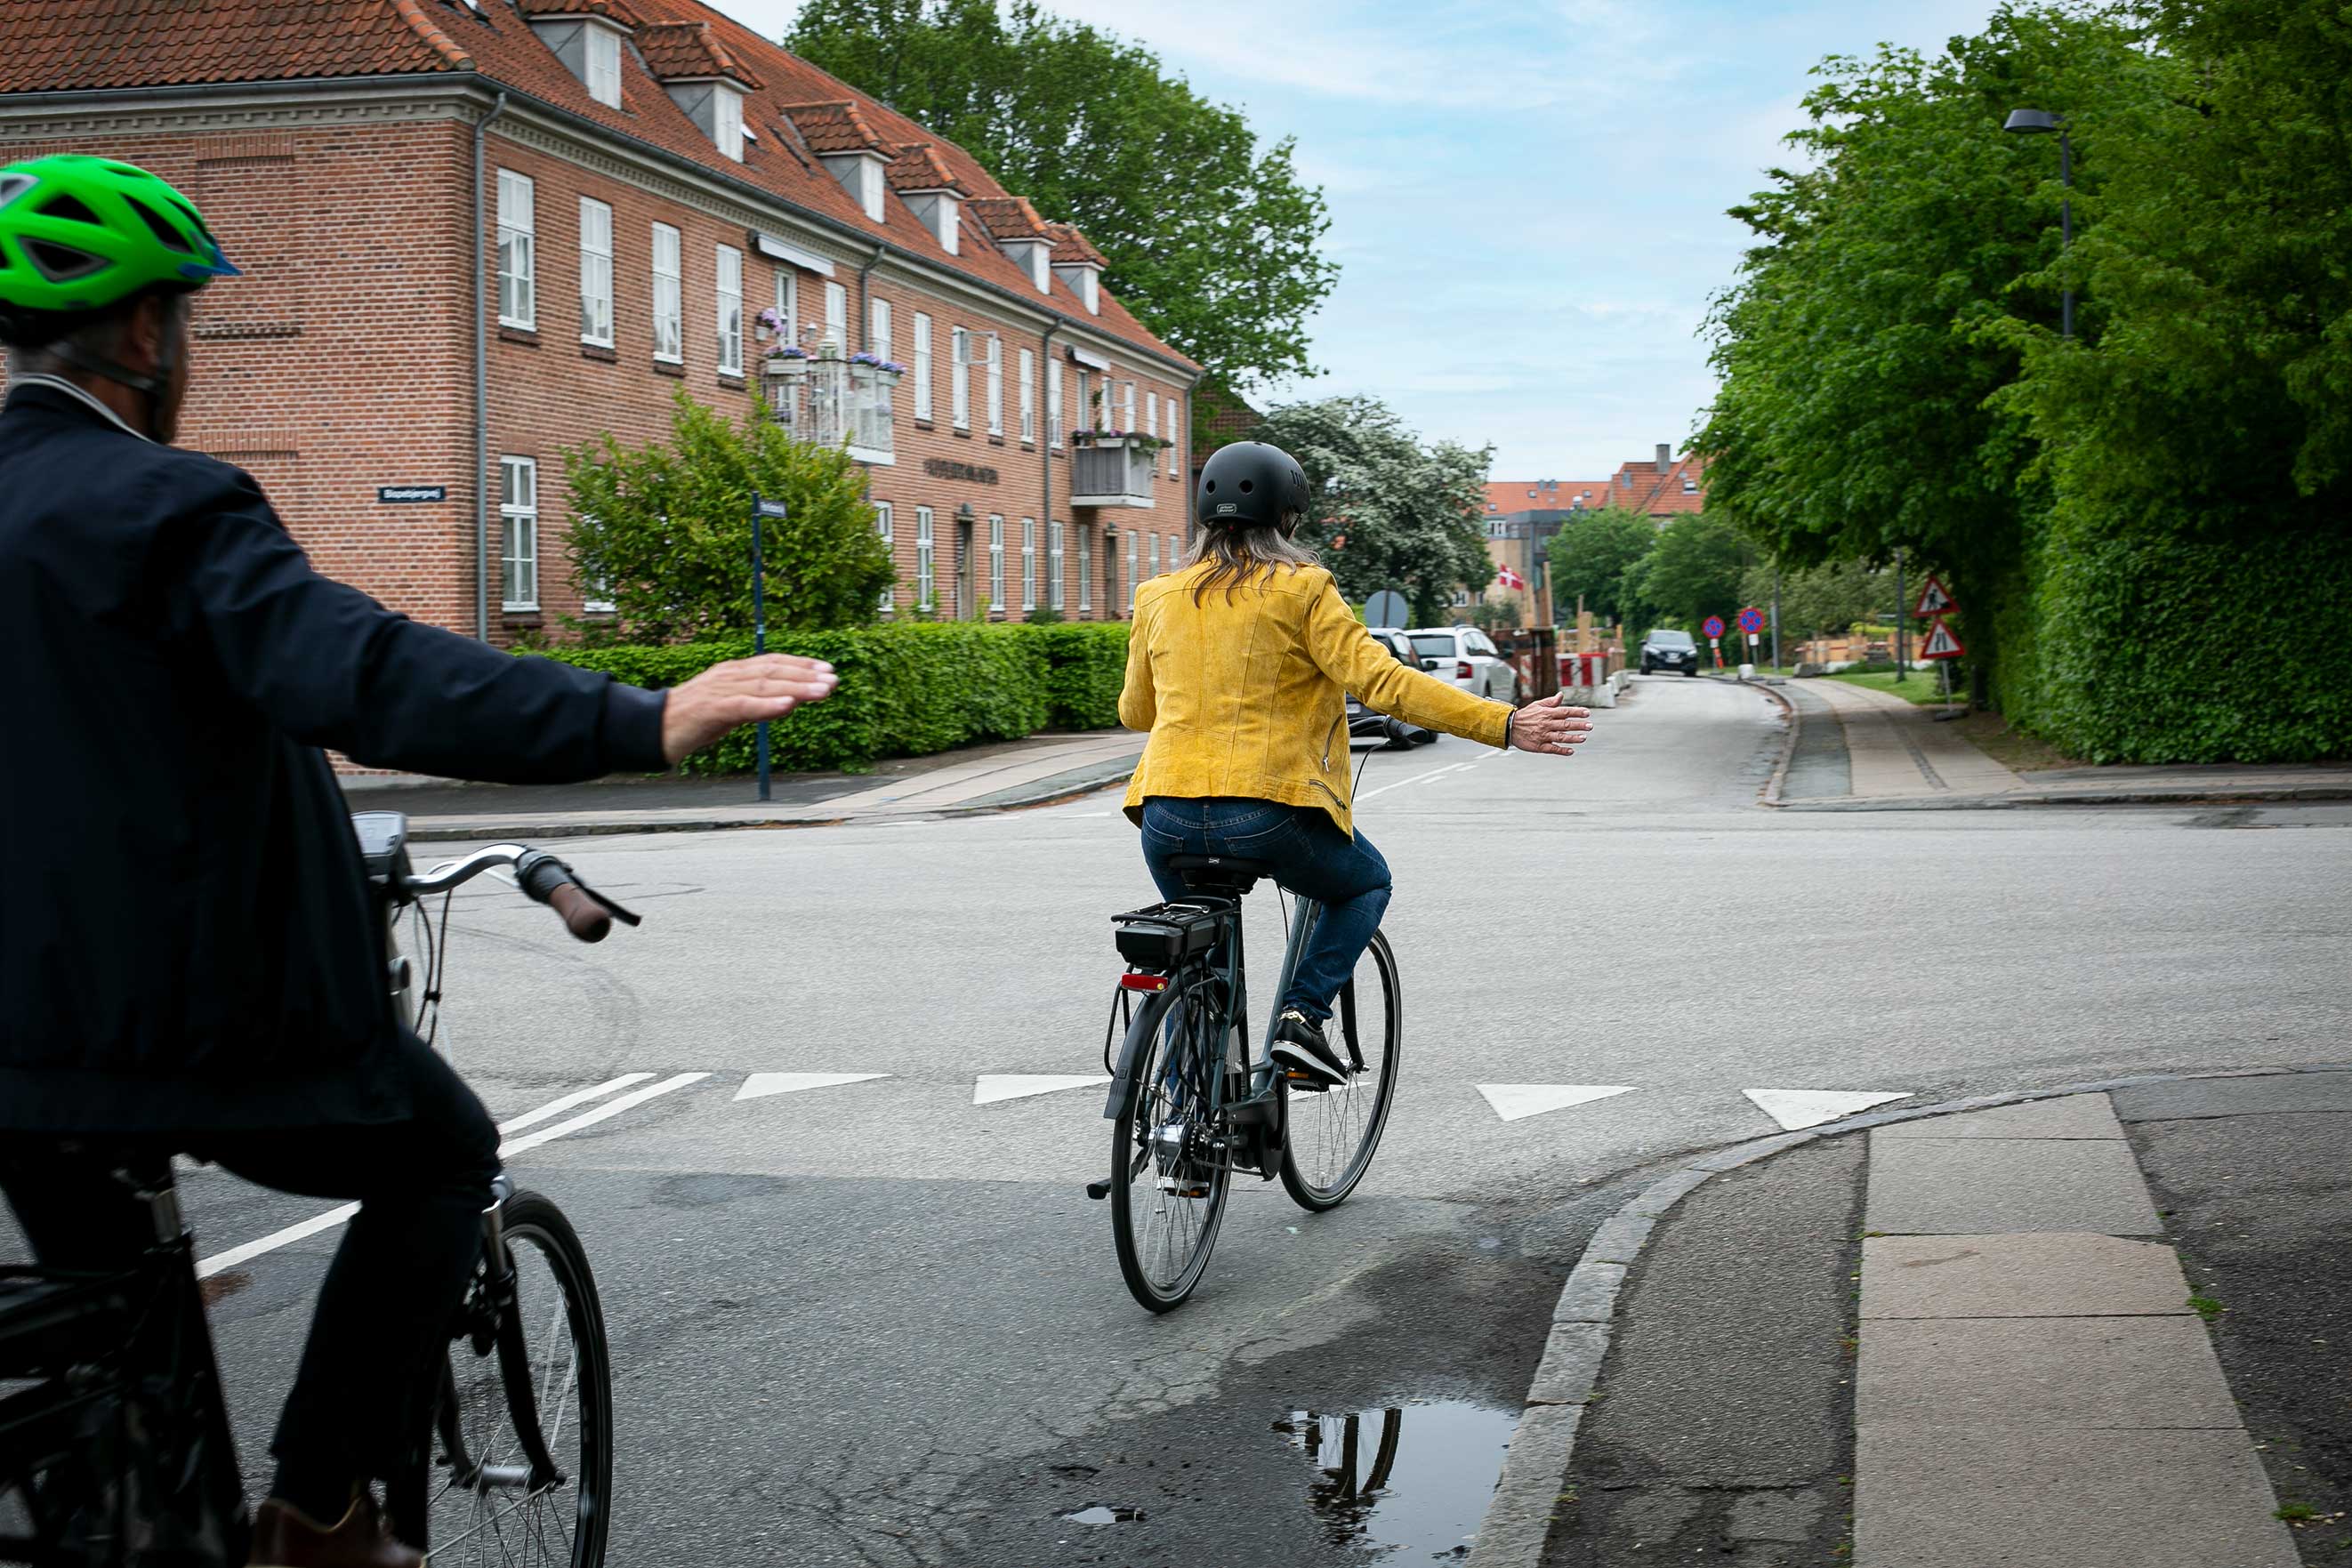 er lovpligtigt at give tegn på cykel | SikkerTrafik.dk